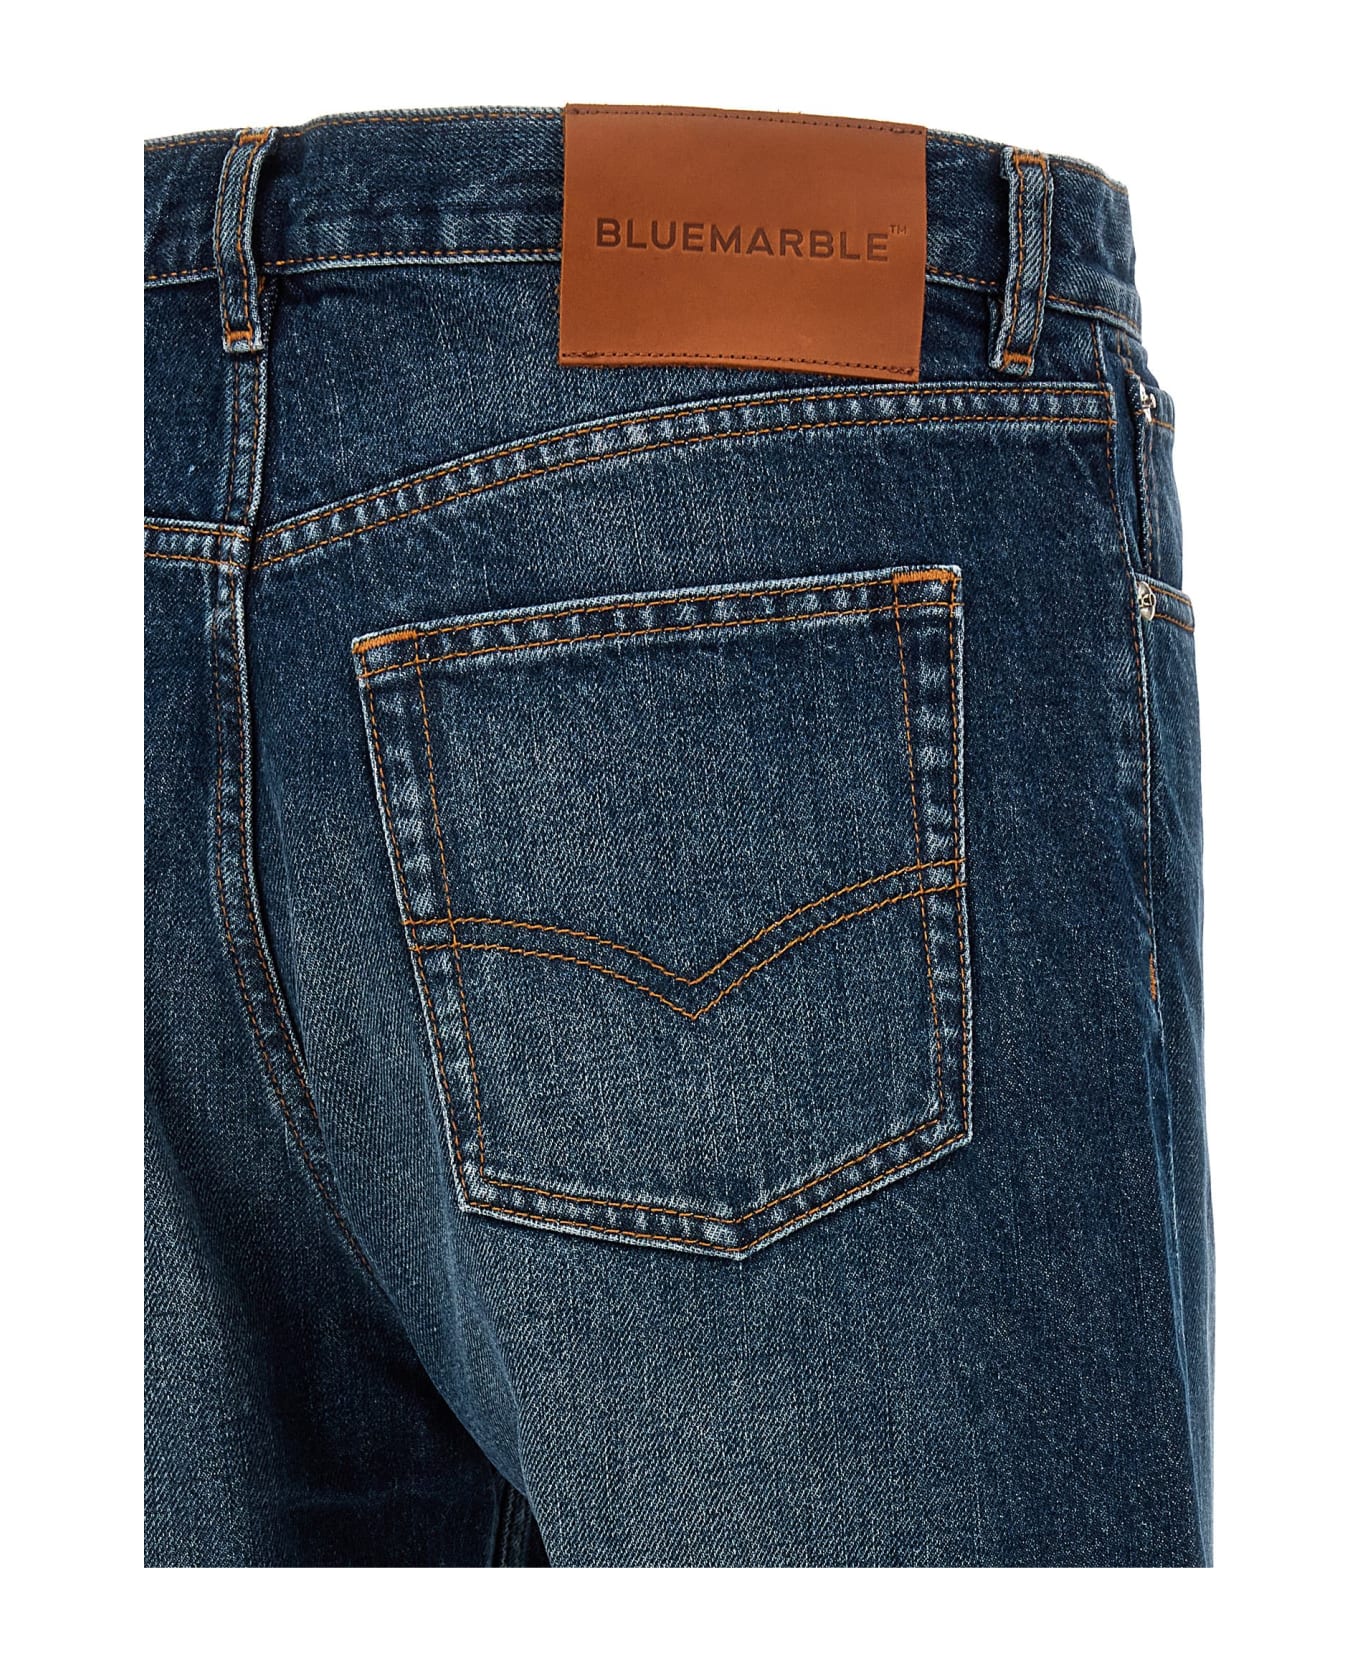 Bluemarble Multicolor Faux Fur Insert Jeans - Blue